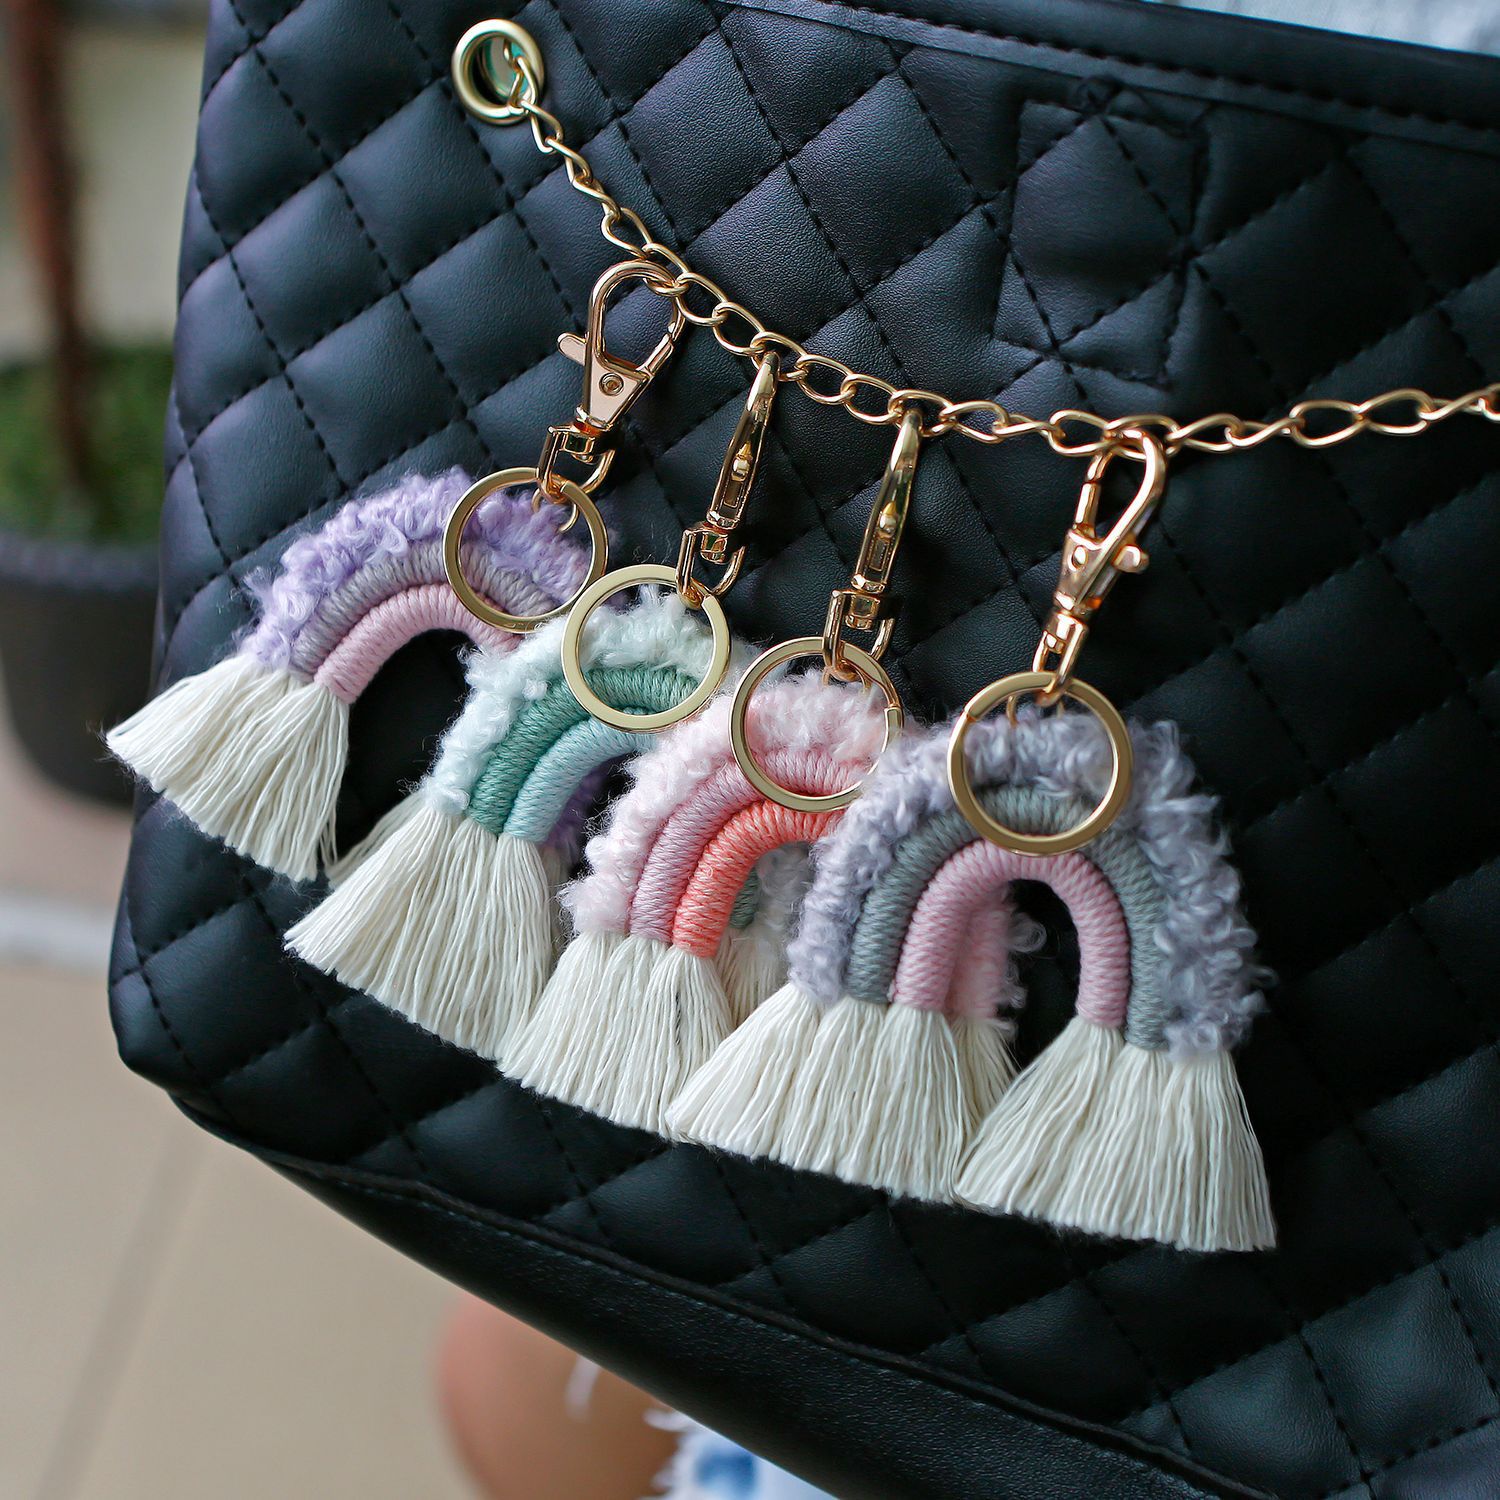 Püskül anahtar zinciri basit dokuma anahtarlık parti sırt çantası şekli dekor yaratıcı düz renk kolye